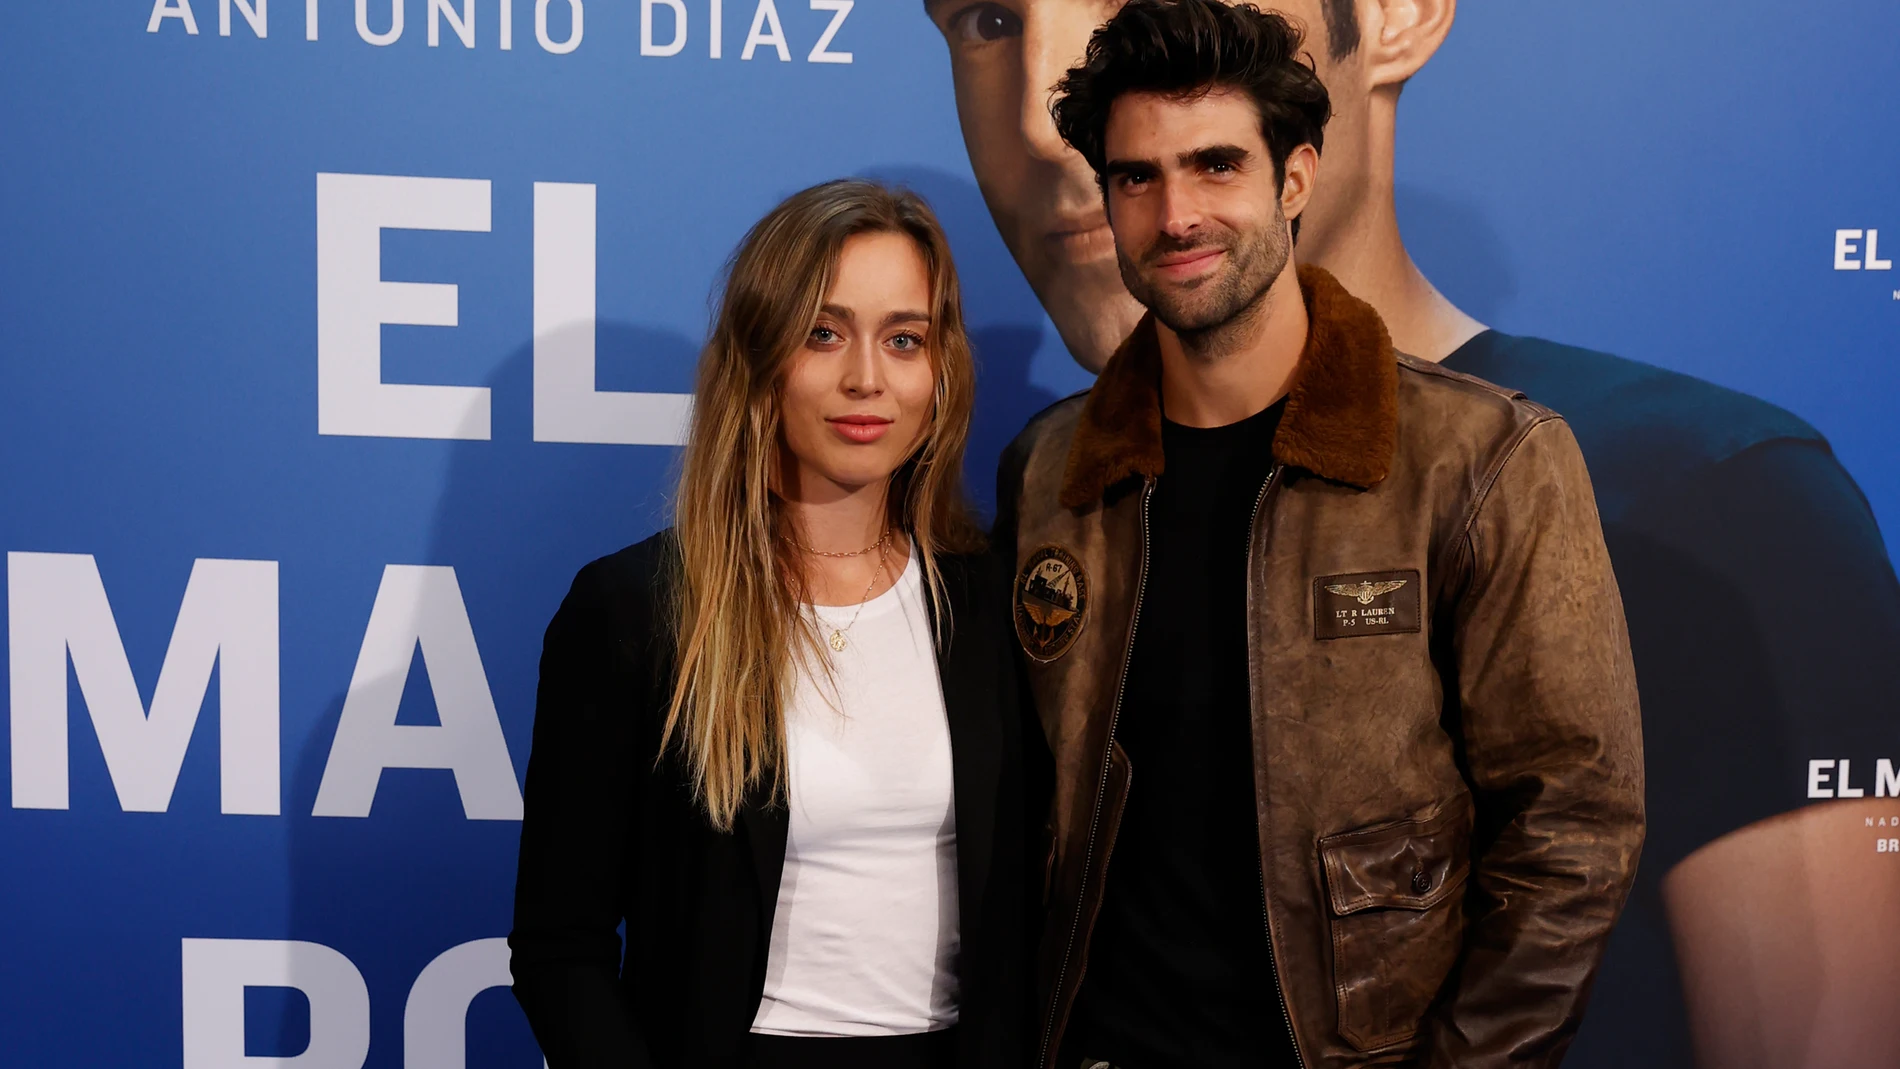 Paula Badosa y Juan Betancourt posan juntos en el photocall de el Mago Pop en Madrid